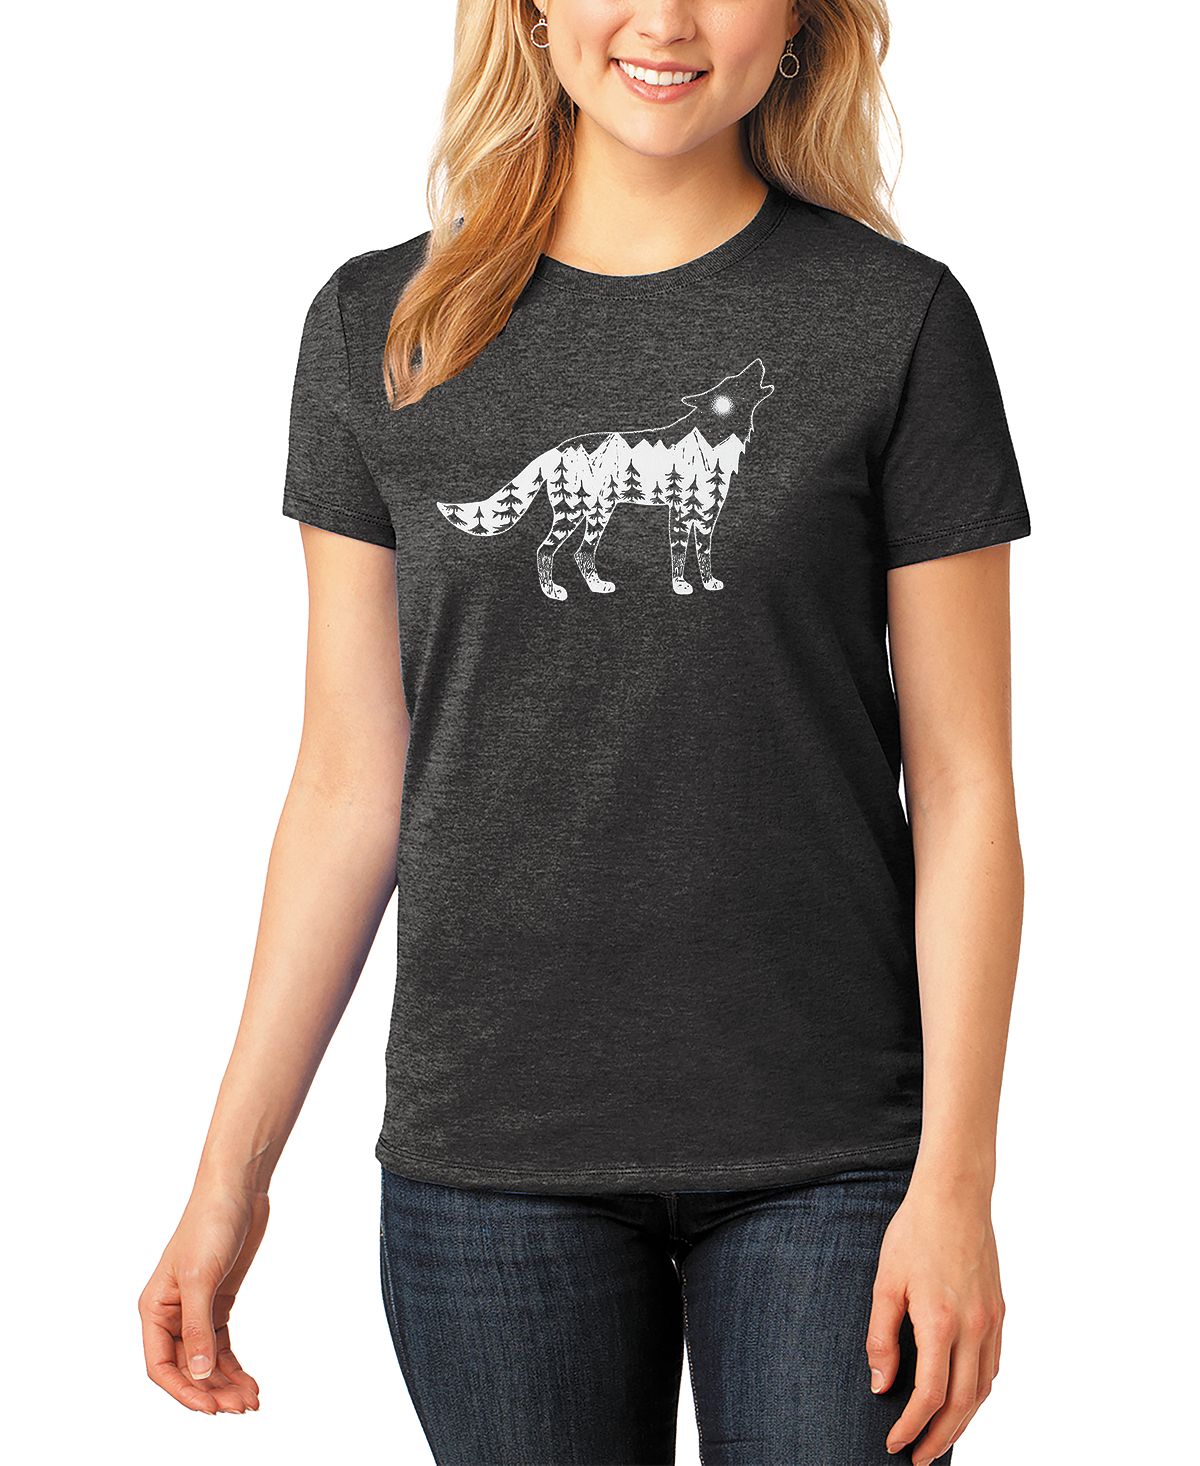 Женская футболка premium blend howling wolf word art LA Pop Art, черный